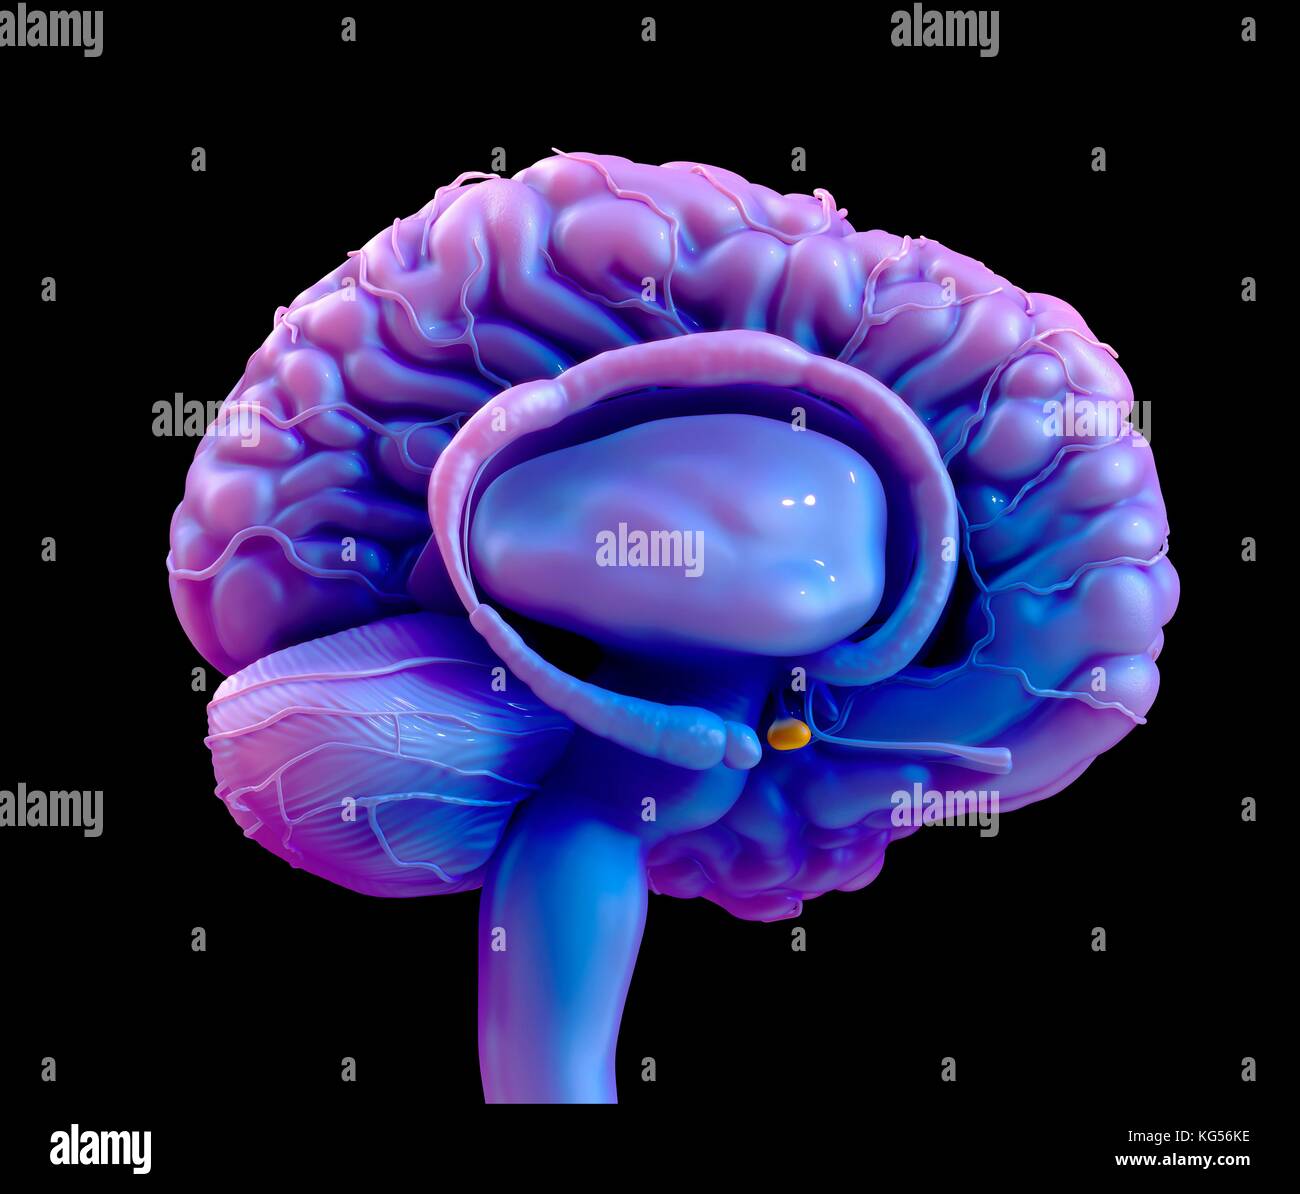 Cervello umano ghiandola pituitaria, illustrazione. Foto Stock